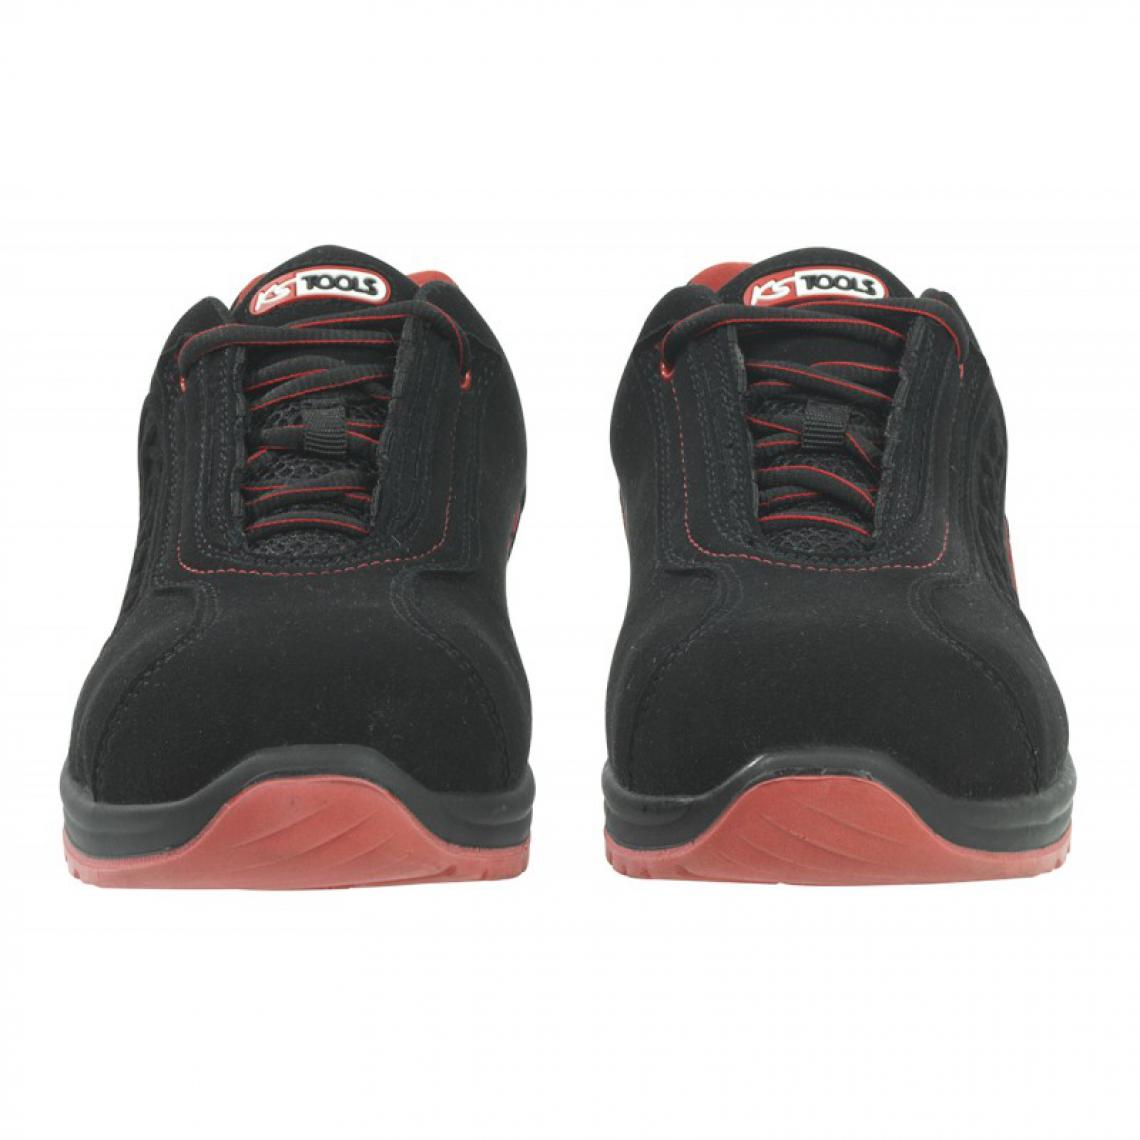 Kstools - Chaussures de sécurité KSTOOLS Couleur noire rouge taille 39 - Equipement de Protection Individuelle